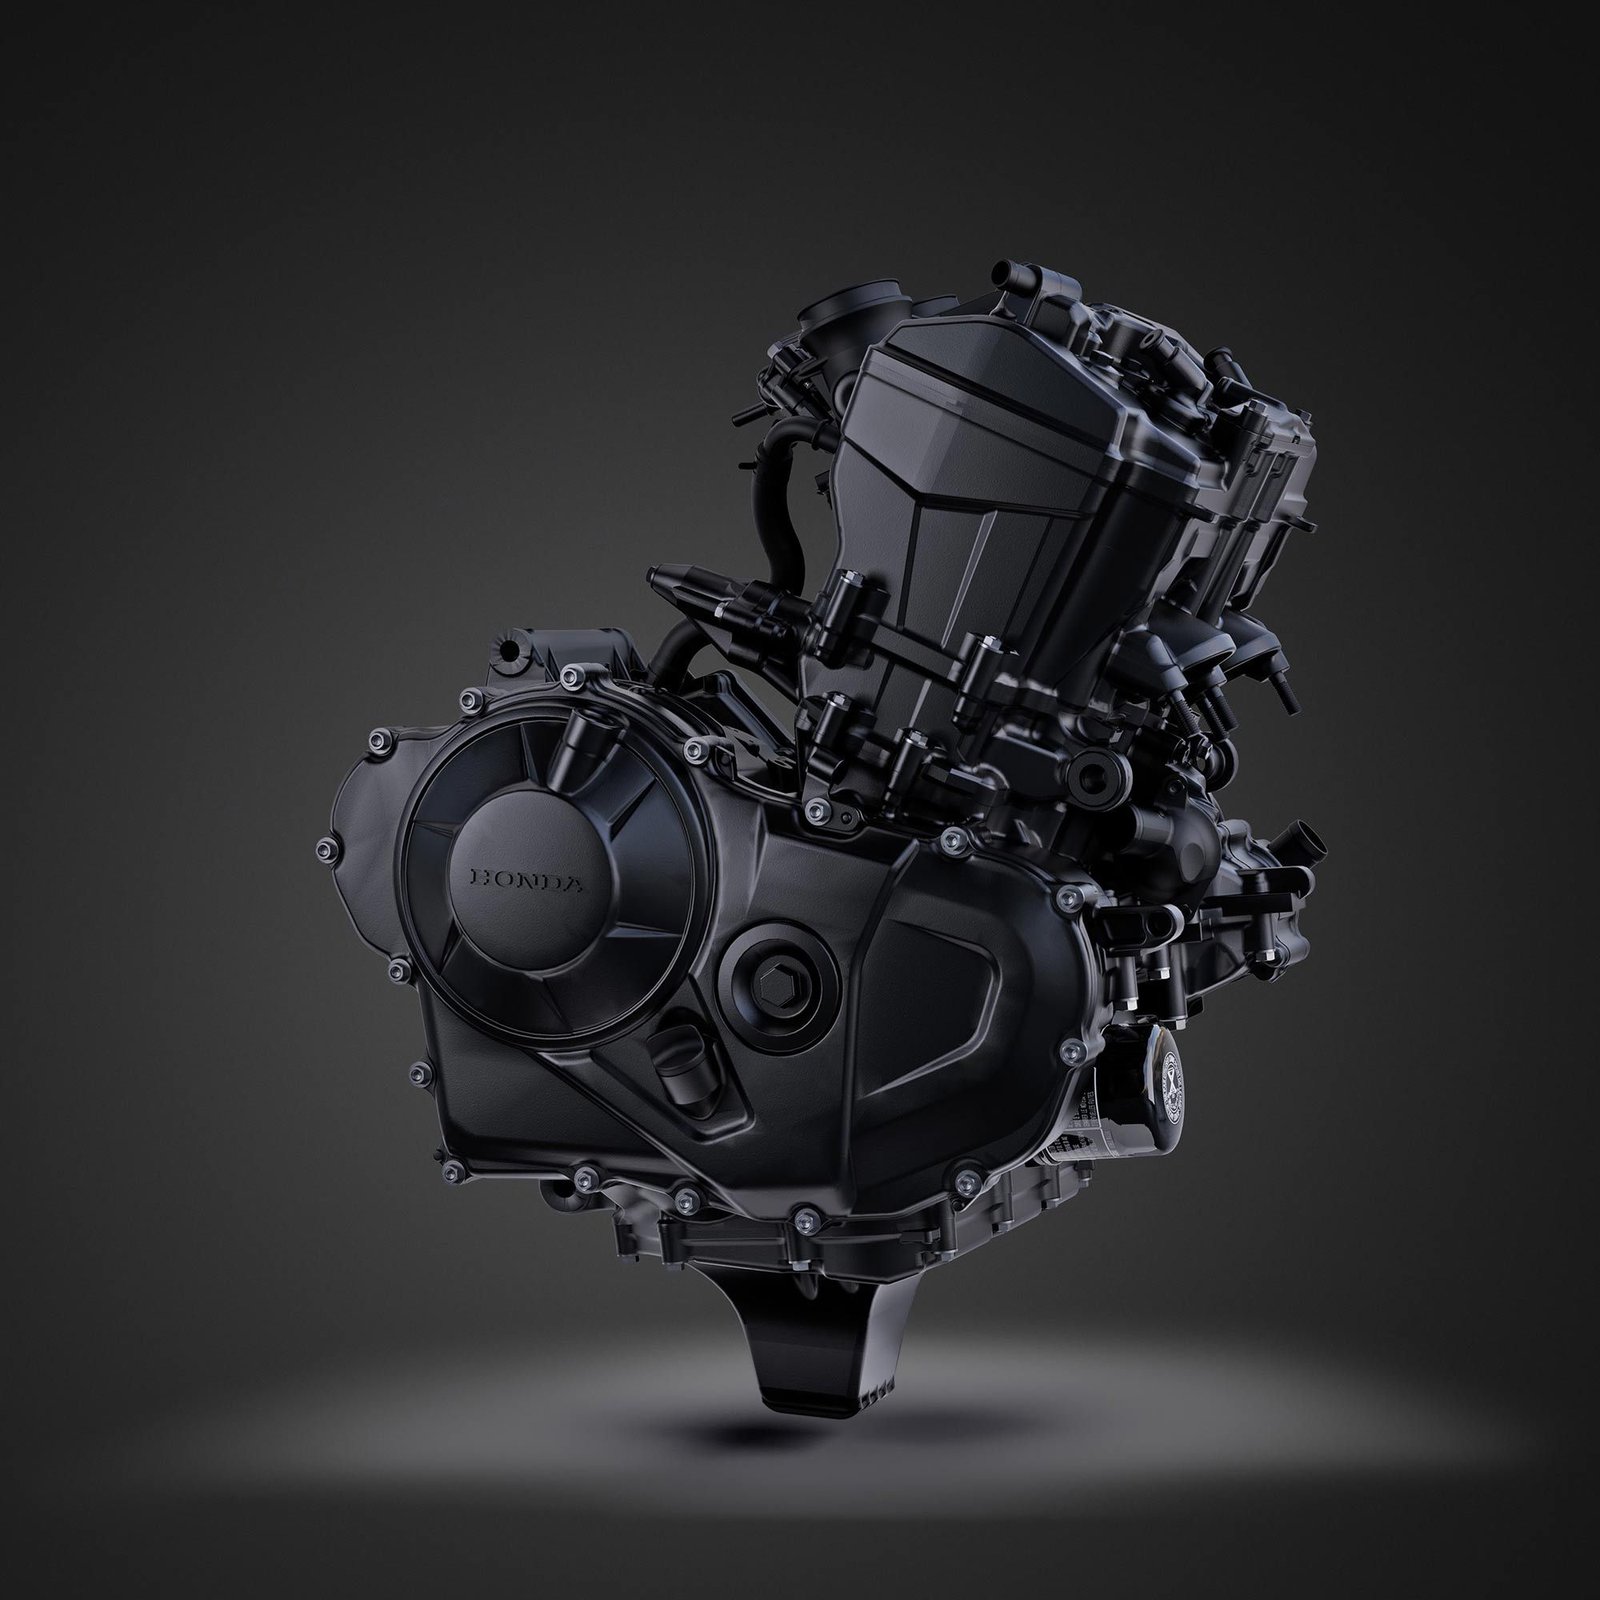 Le moteur Unicam à huit soupapes comportera un vilebrequin à 270 degrés et sera capable de produire un peu plus de 90 ch à 9 500 tr/min et 55 lb-pi.  de couple à 7 250 tr/min.